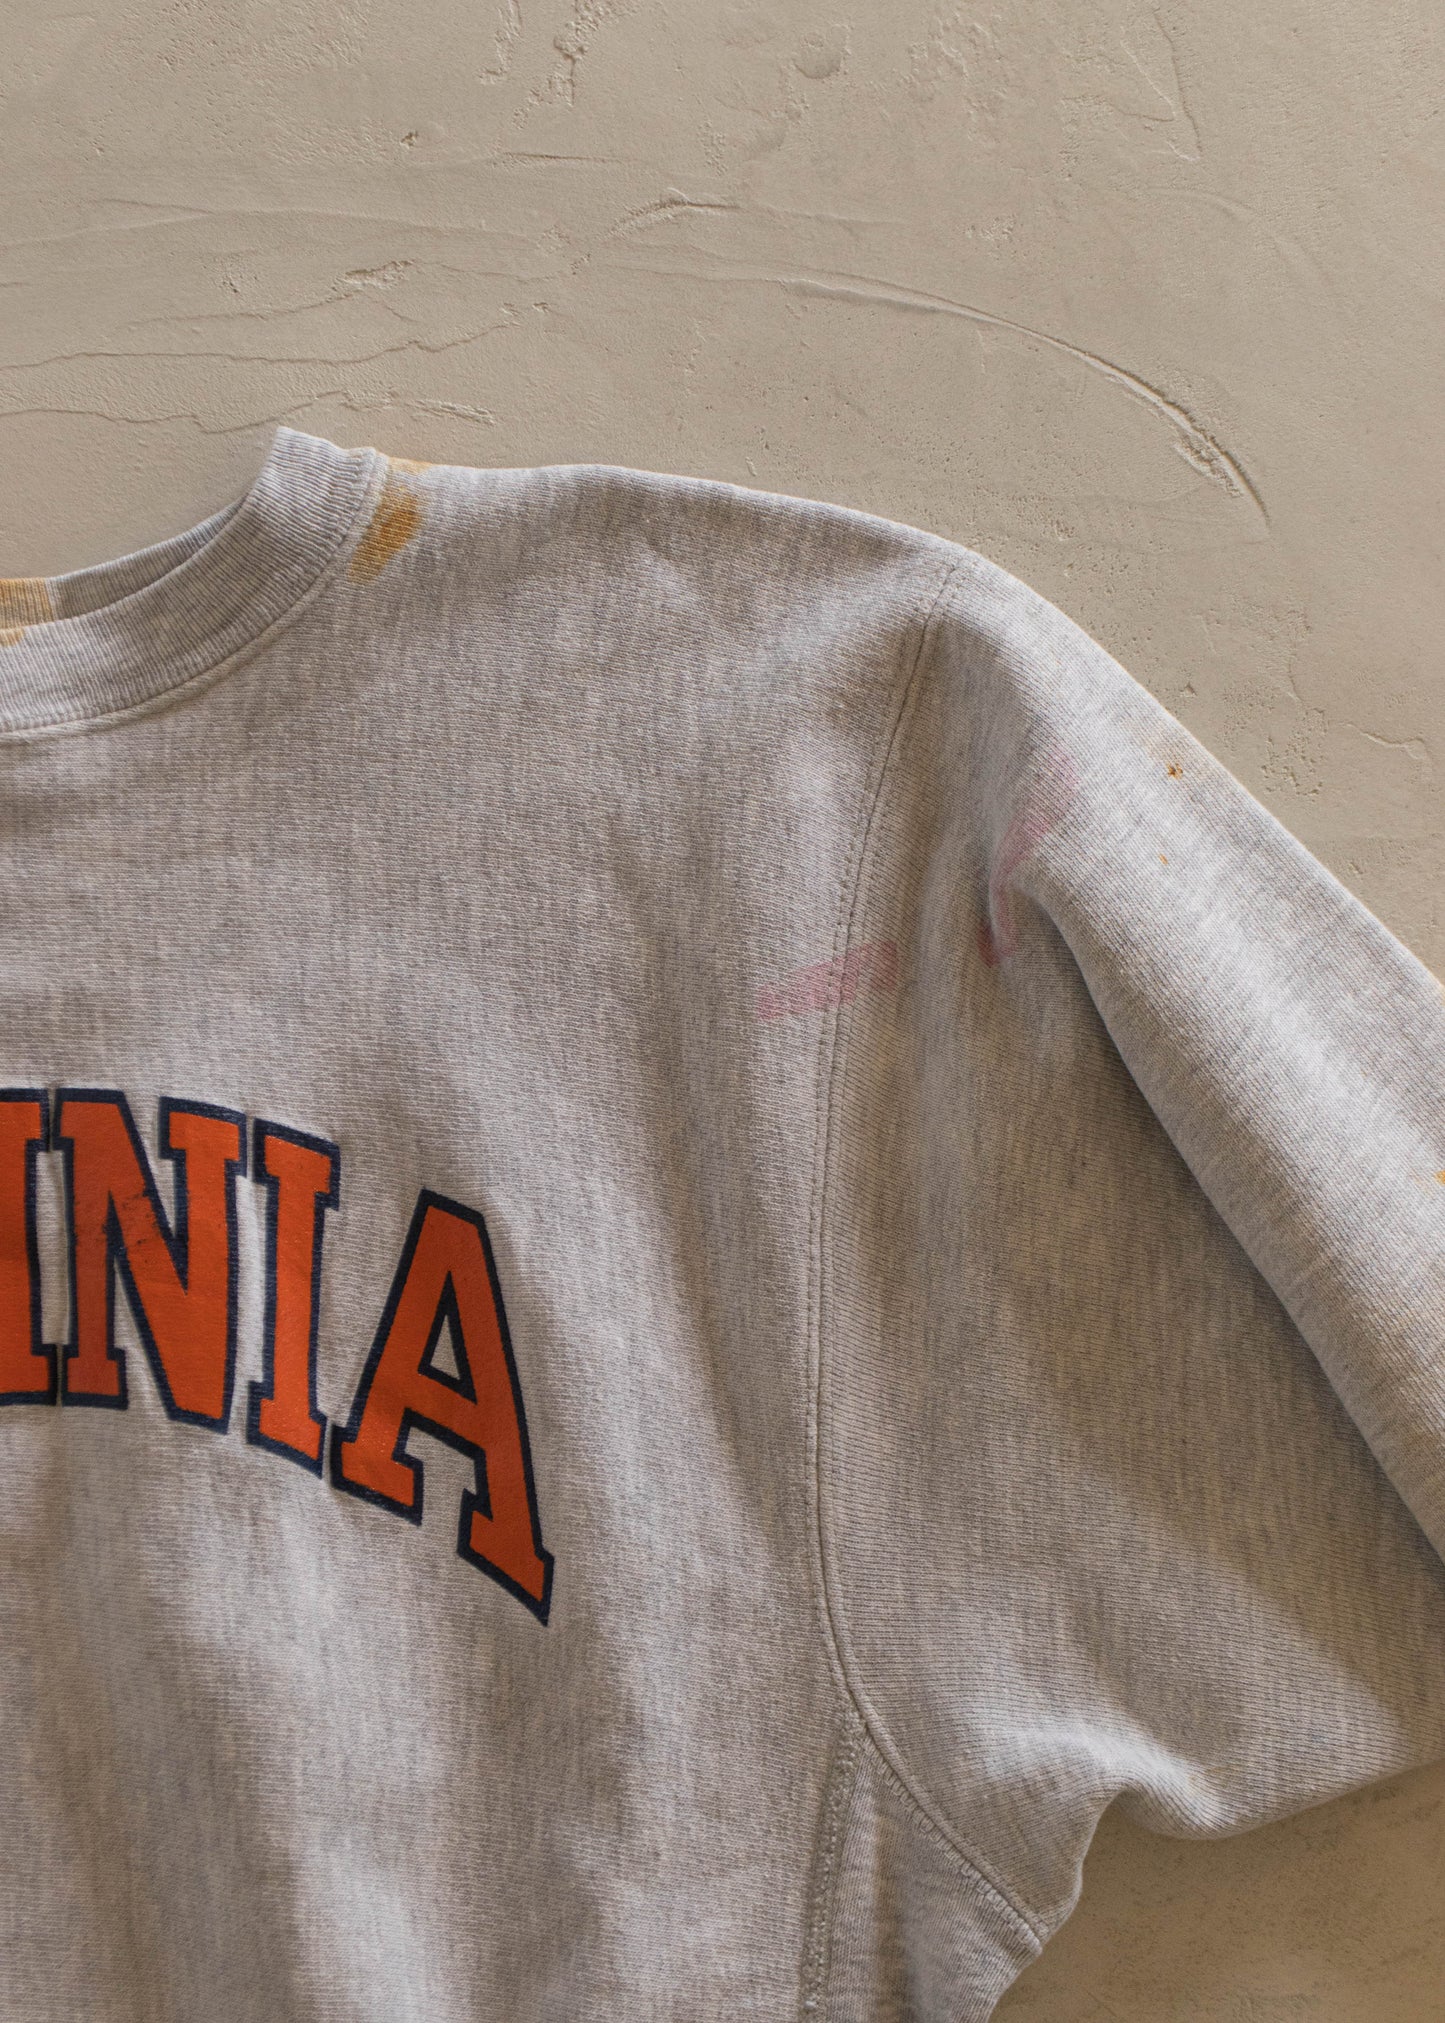 1980s Champion Reverse Weave Virginia Souvenir Sweatshirt Size M/L